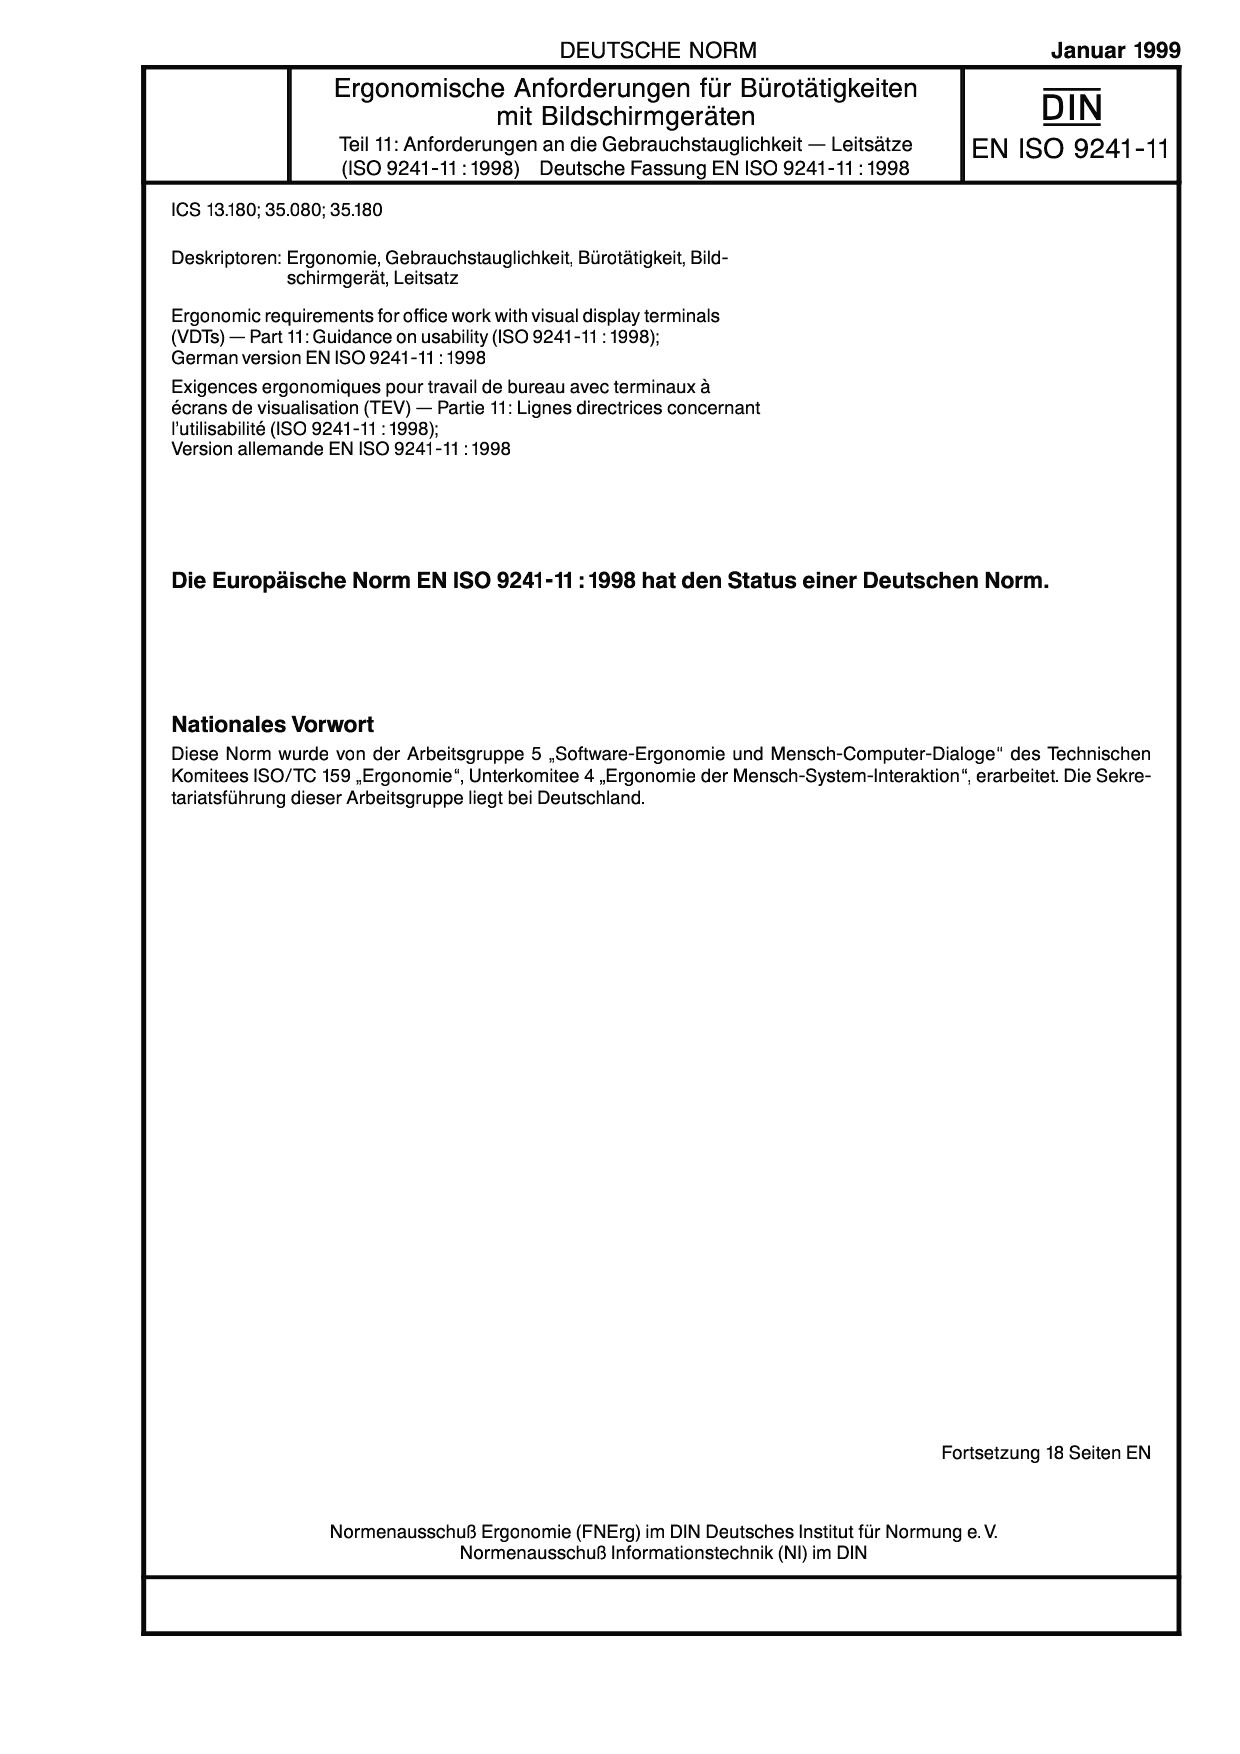 DIN EN ISO 9241-11:1999